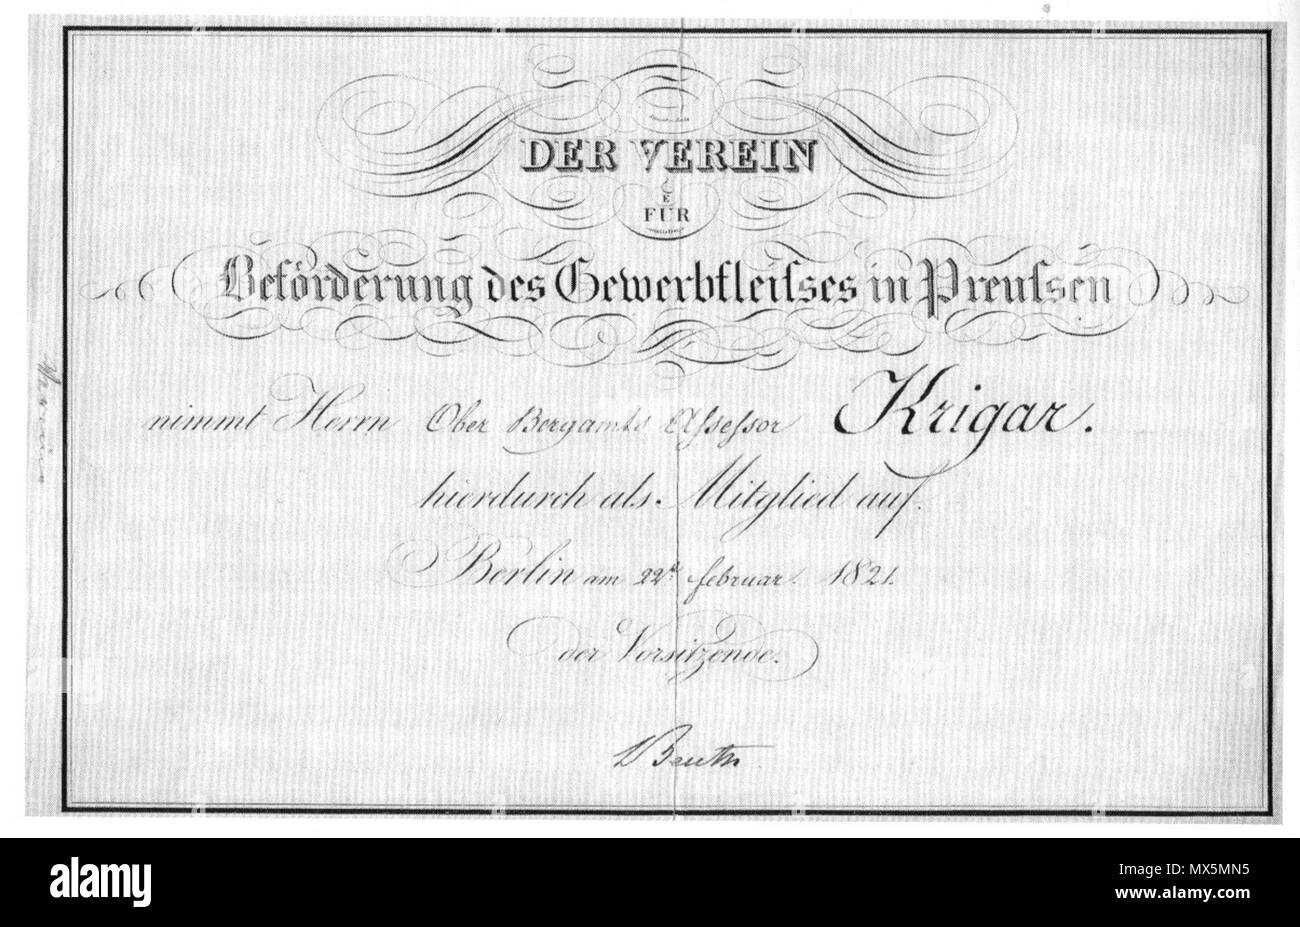 . Mitgliedschaft - Karte für Johann Friedrich Krigar, signiert "Beuth". 1821. Kupfer - Gravur von Schmidt 83 Beuth Mitgliedskarte Stockfoto